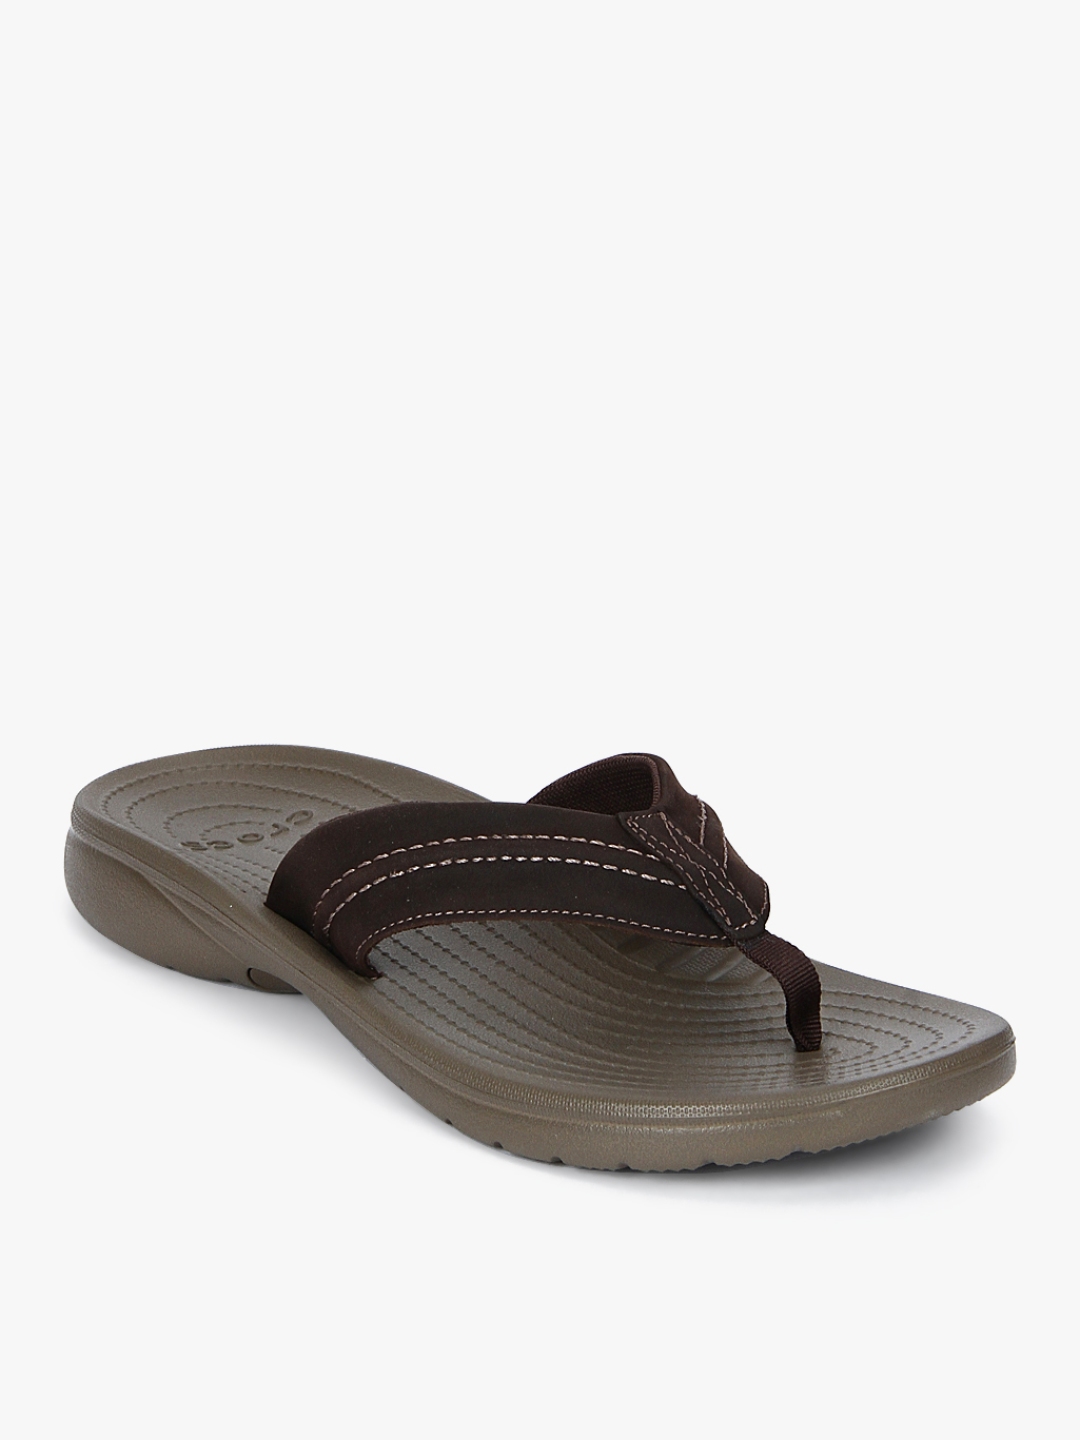 Buy Crocs Men Coffee Brown Solid Thong Flip Flops - Flip Flops for Men ...